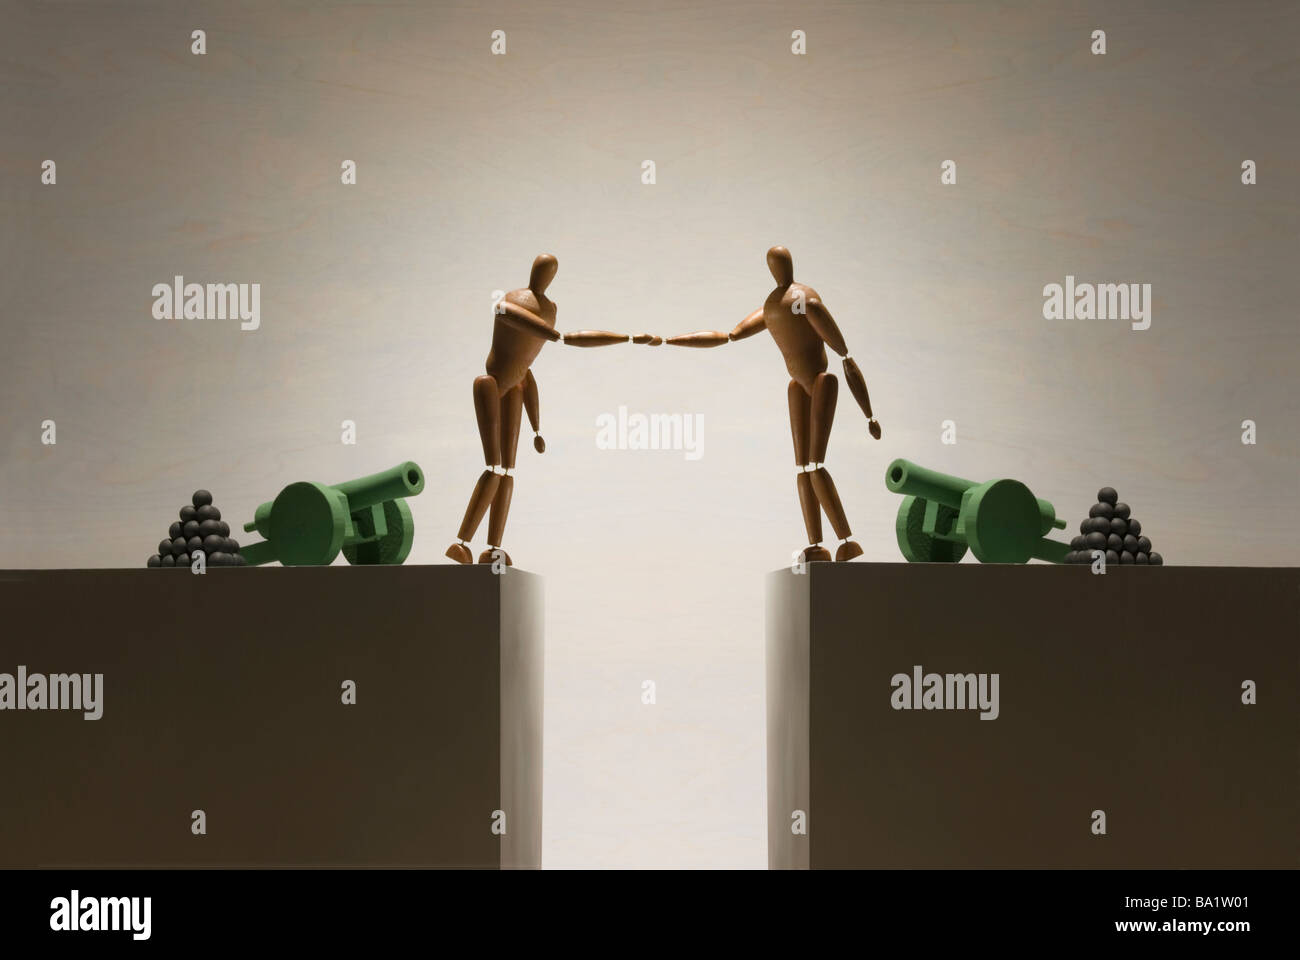 Dos figuras se estrechan las manos cruzando una brecha cada cifra tiene un cañón en el fondo Foto de stock